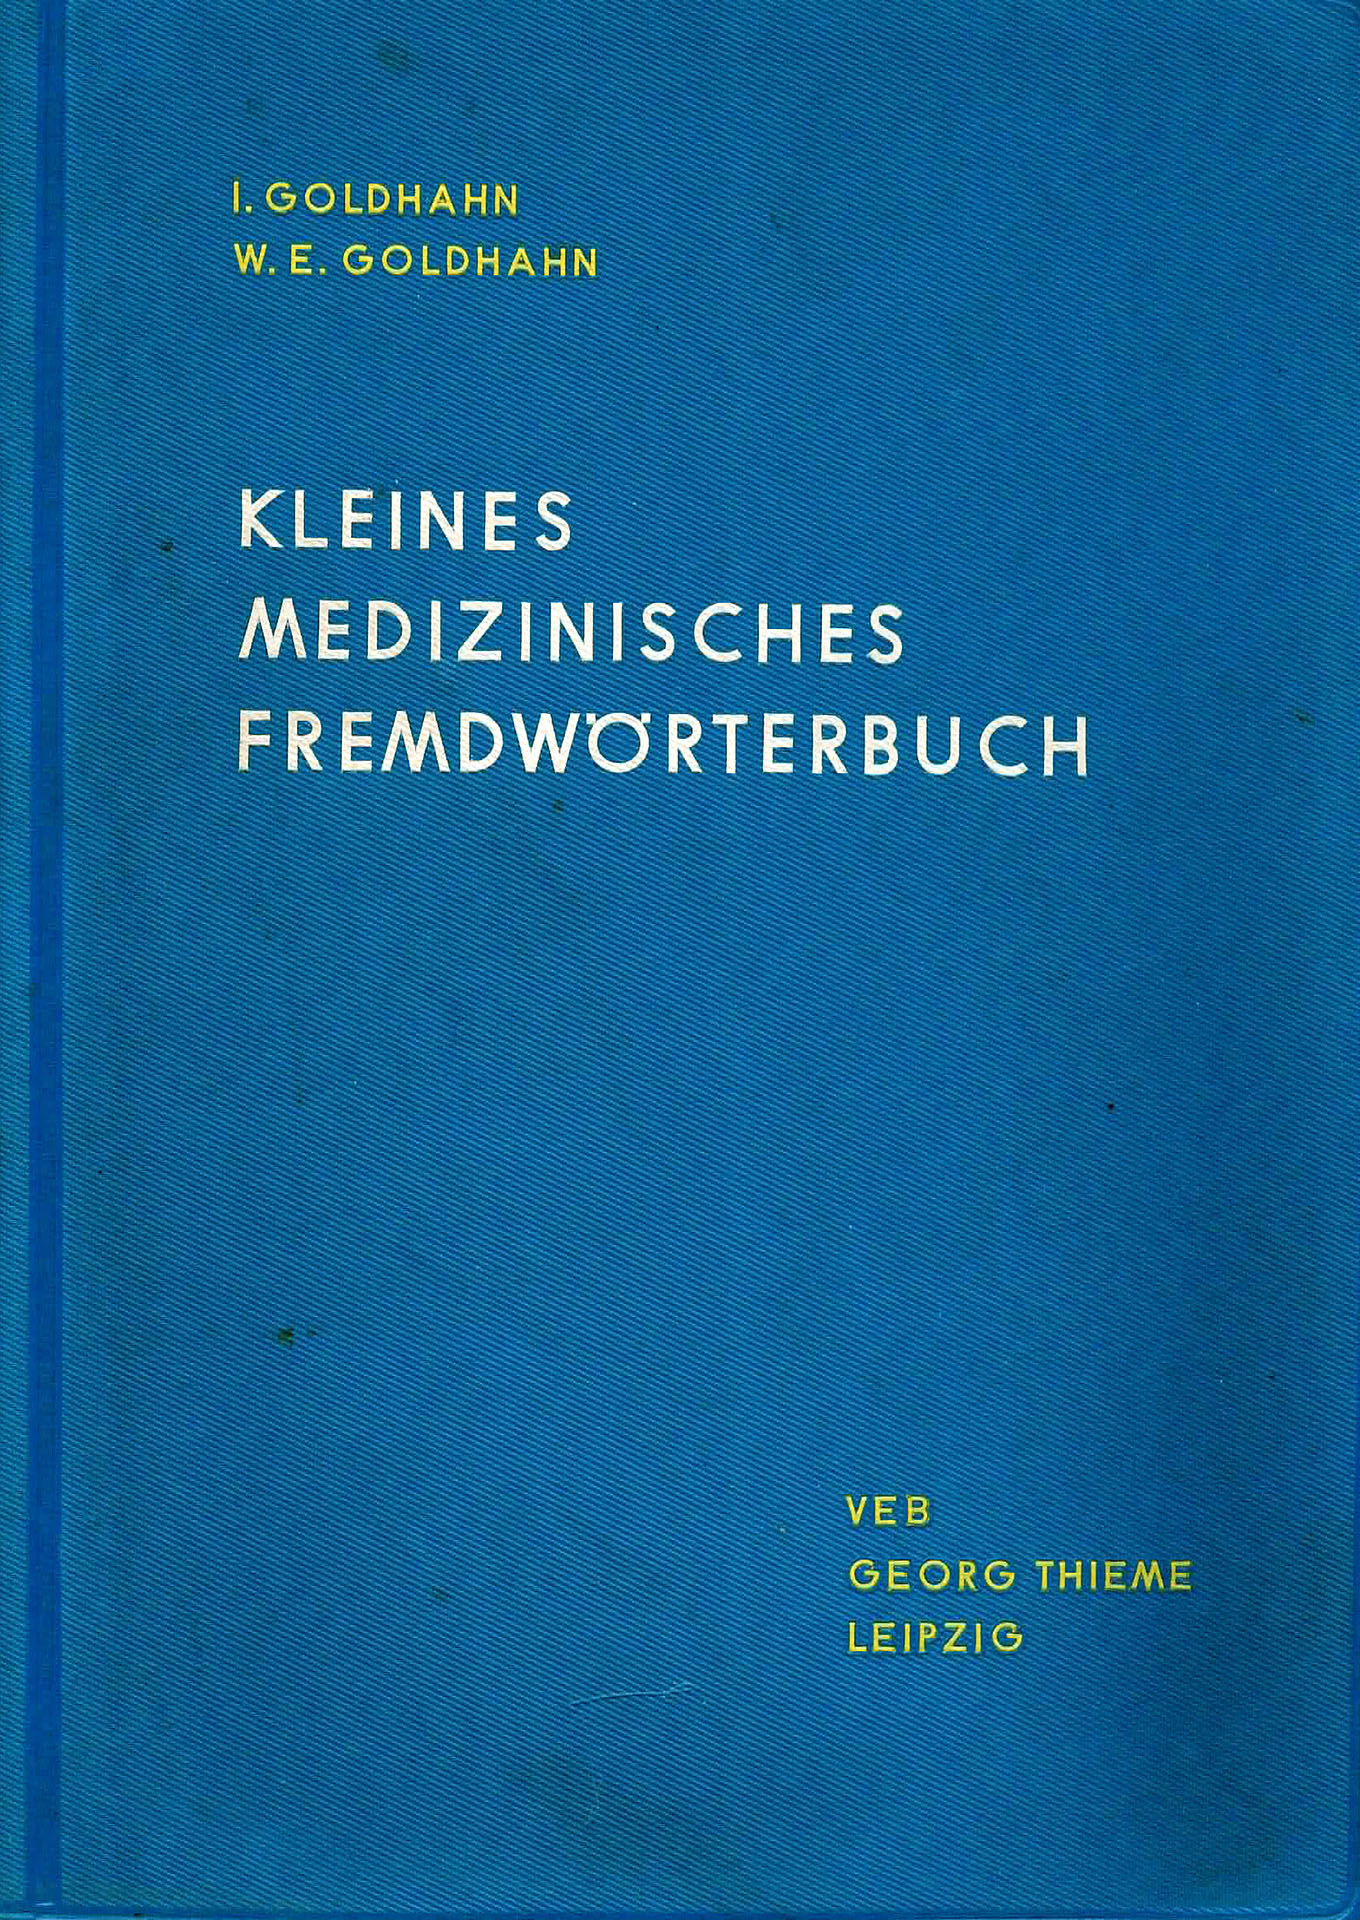 Kleines Medizinisches Wörterbuch - Goldhahn, I. und W. E.